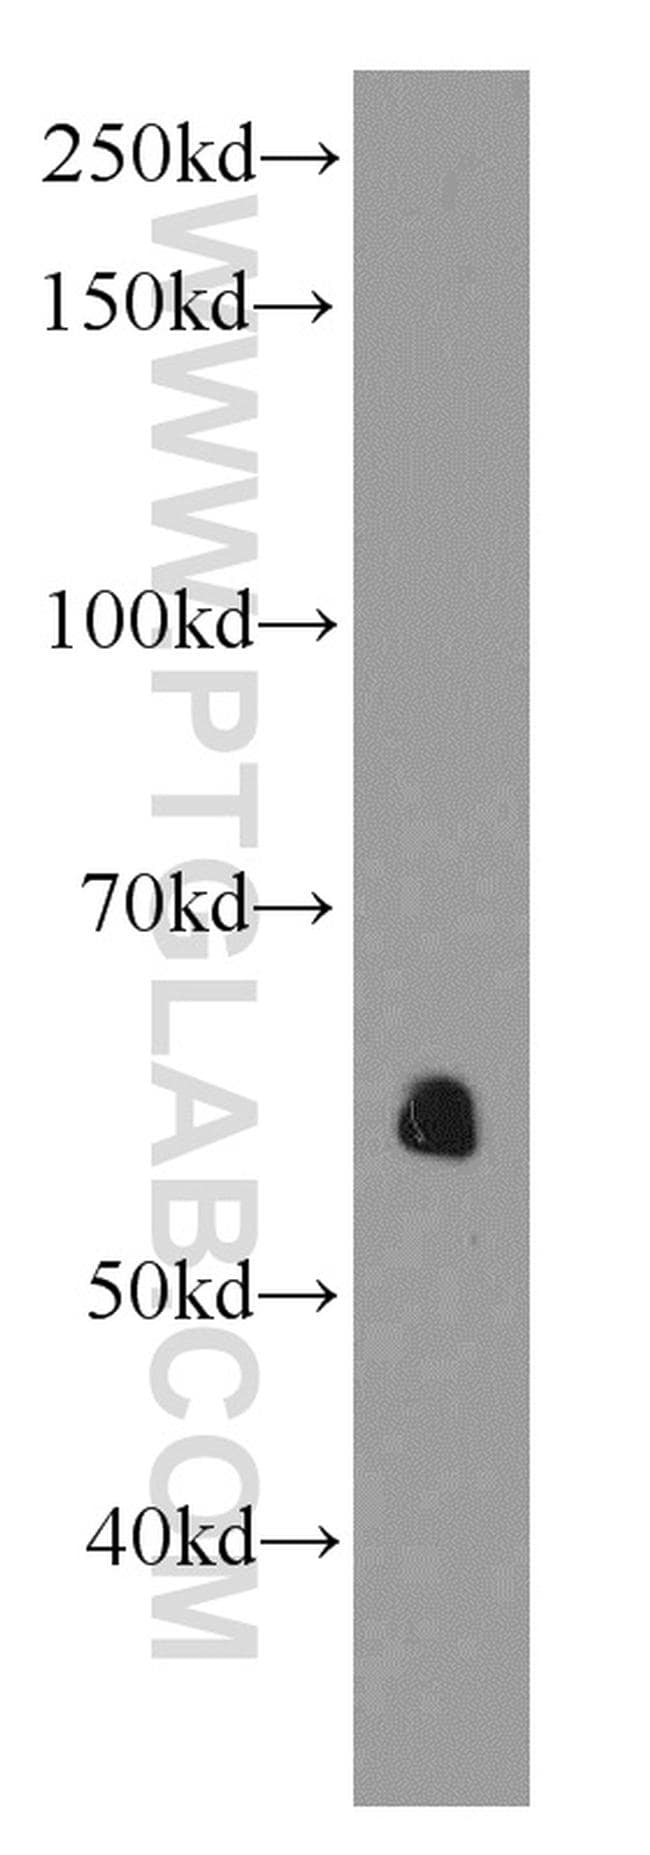 AEBP2 Antibody in Western Blot (WB)